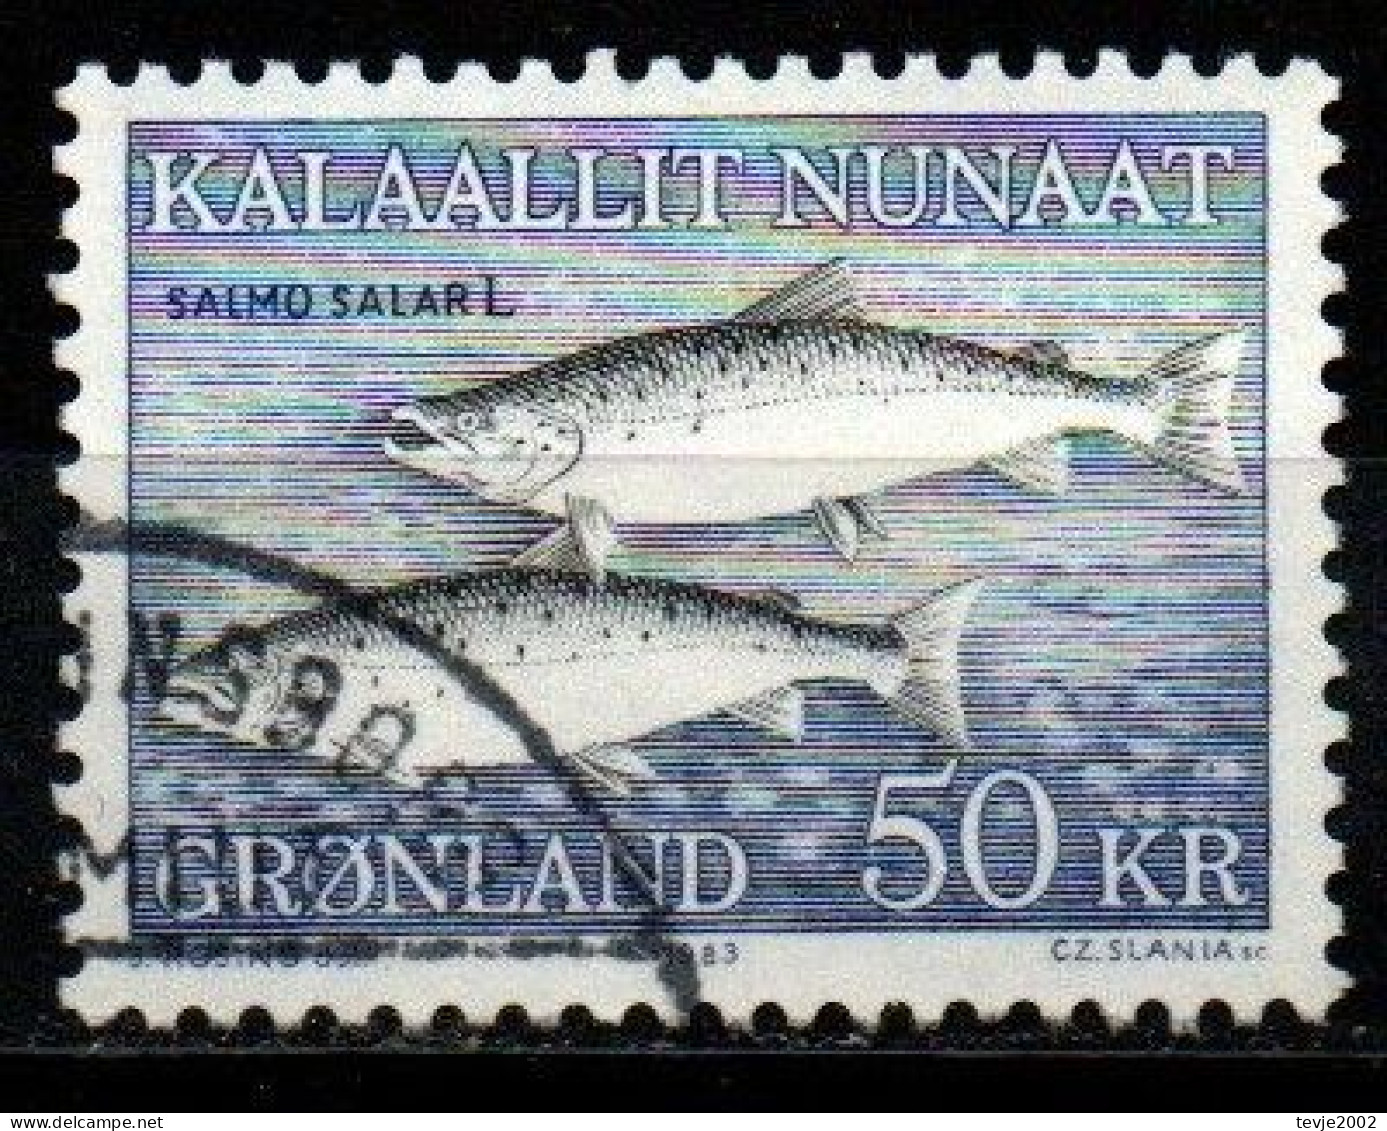 Grönland 1983 - Mi.Nr. 140 - Gestempelt Used - Tiere Animals Fische Fishes - Gebraucht